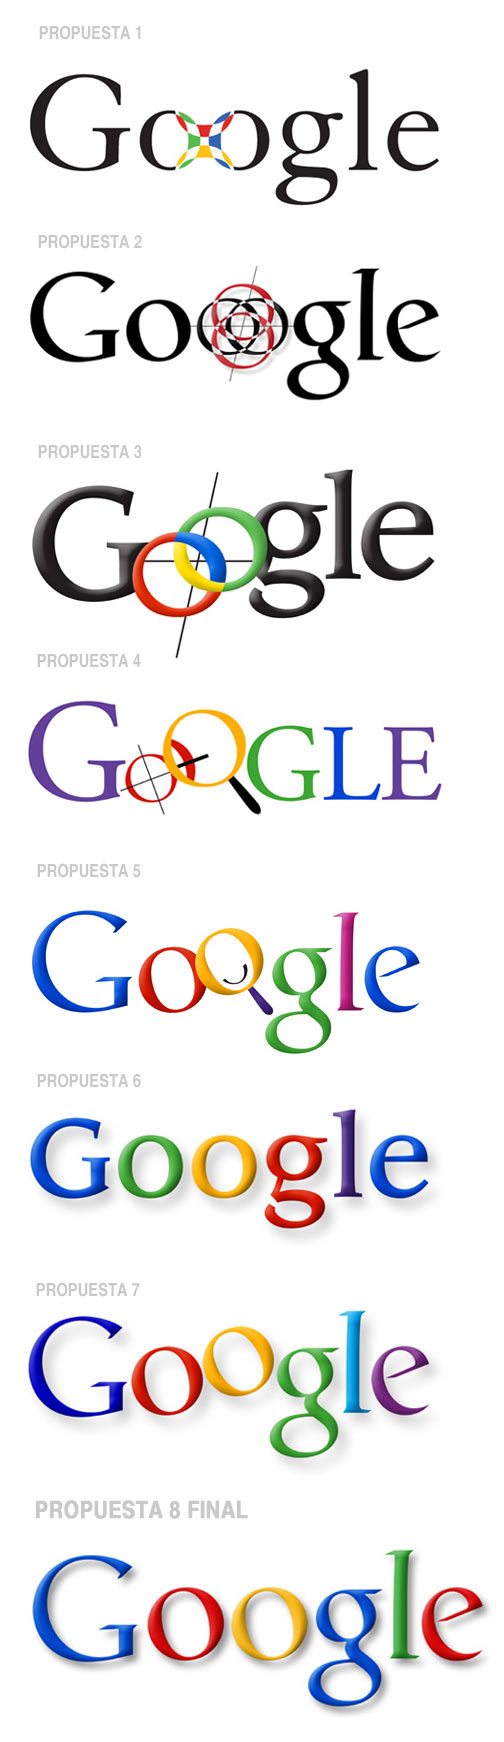 Historia del logotipo de Google + ¡Análisis del nuevo logo! - Tentulogo